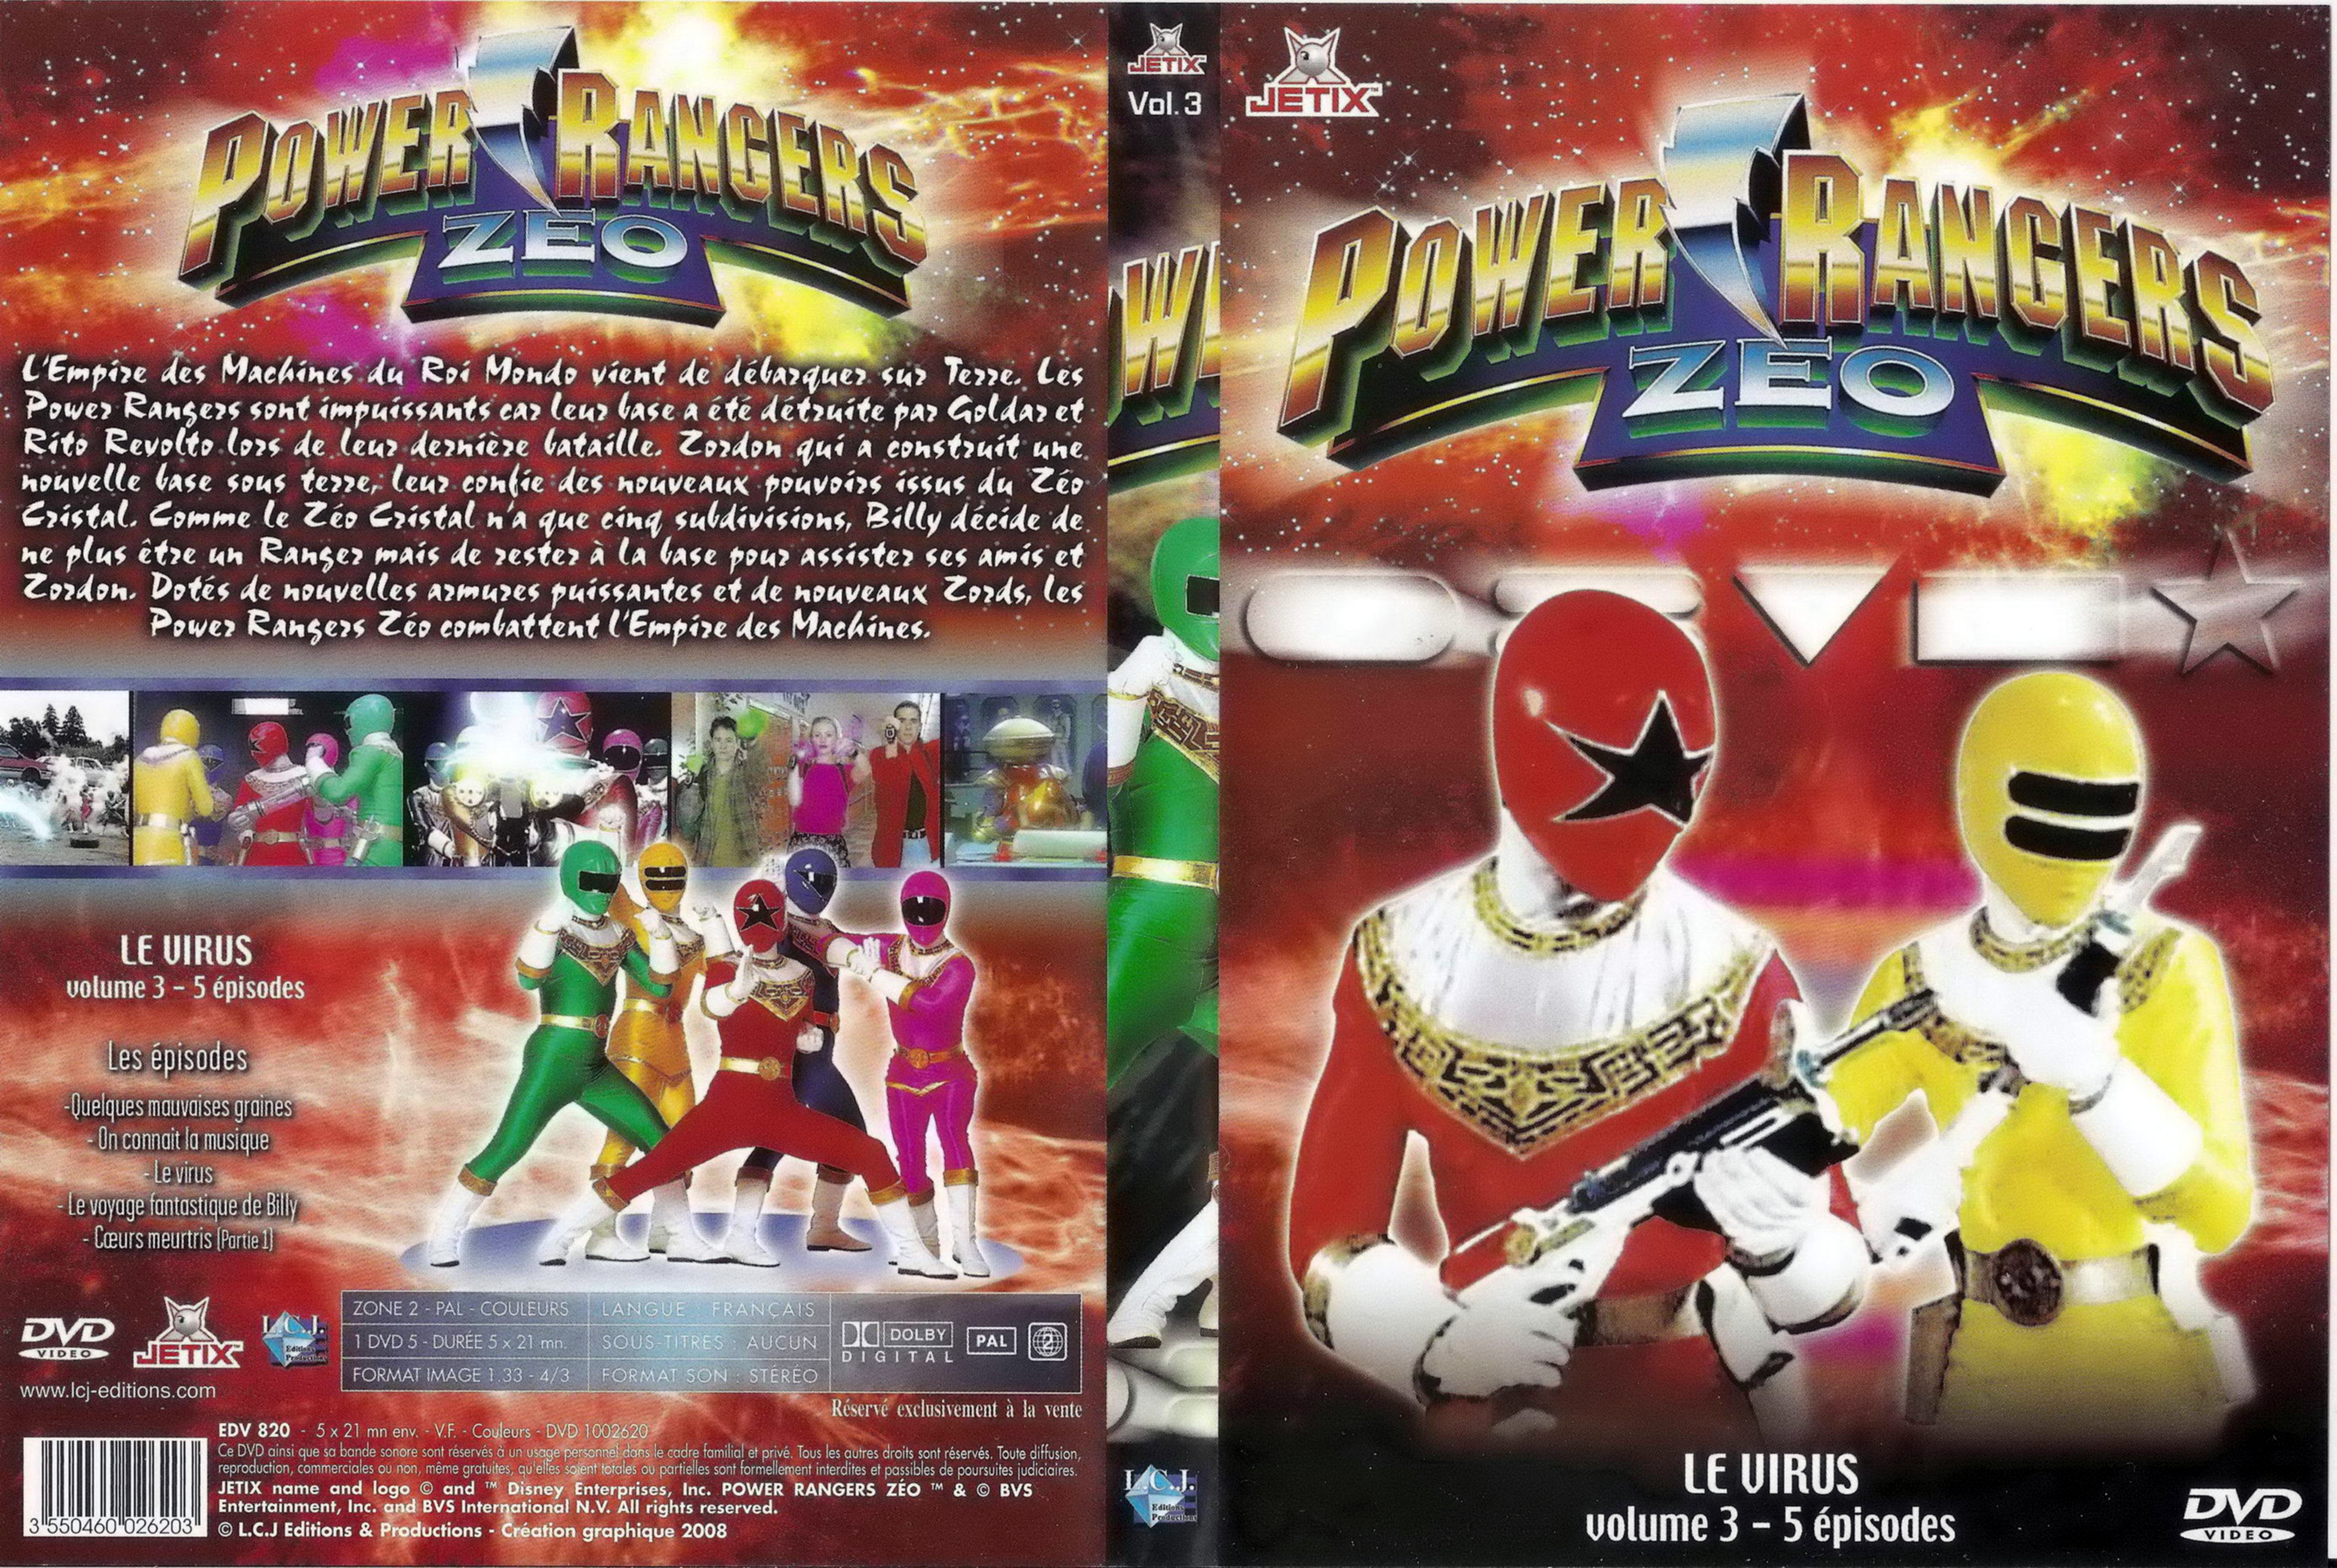 Jaquette DVD Power rangers zeo vol 3.